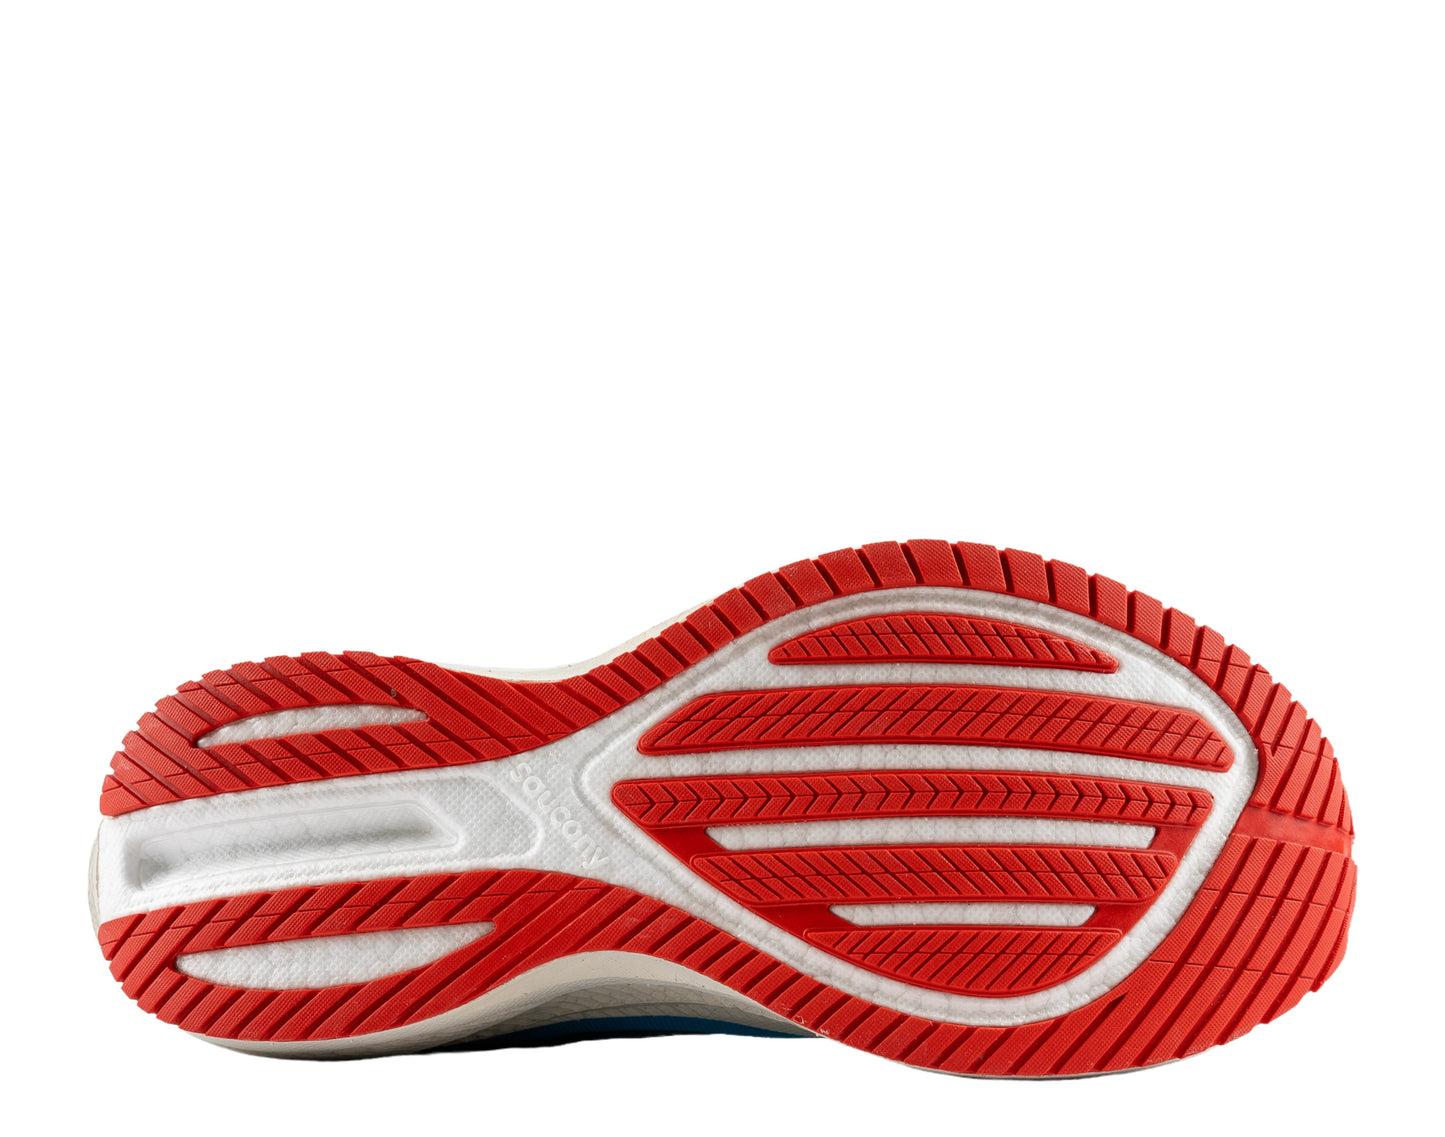 Saucony Triumph 20 Men's Running Shoes